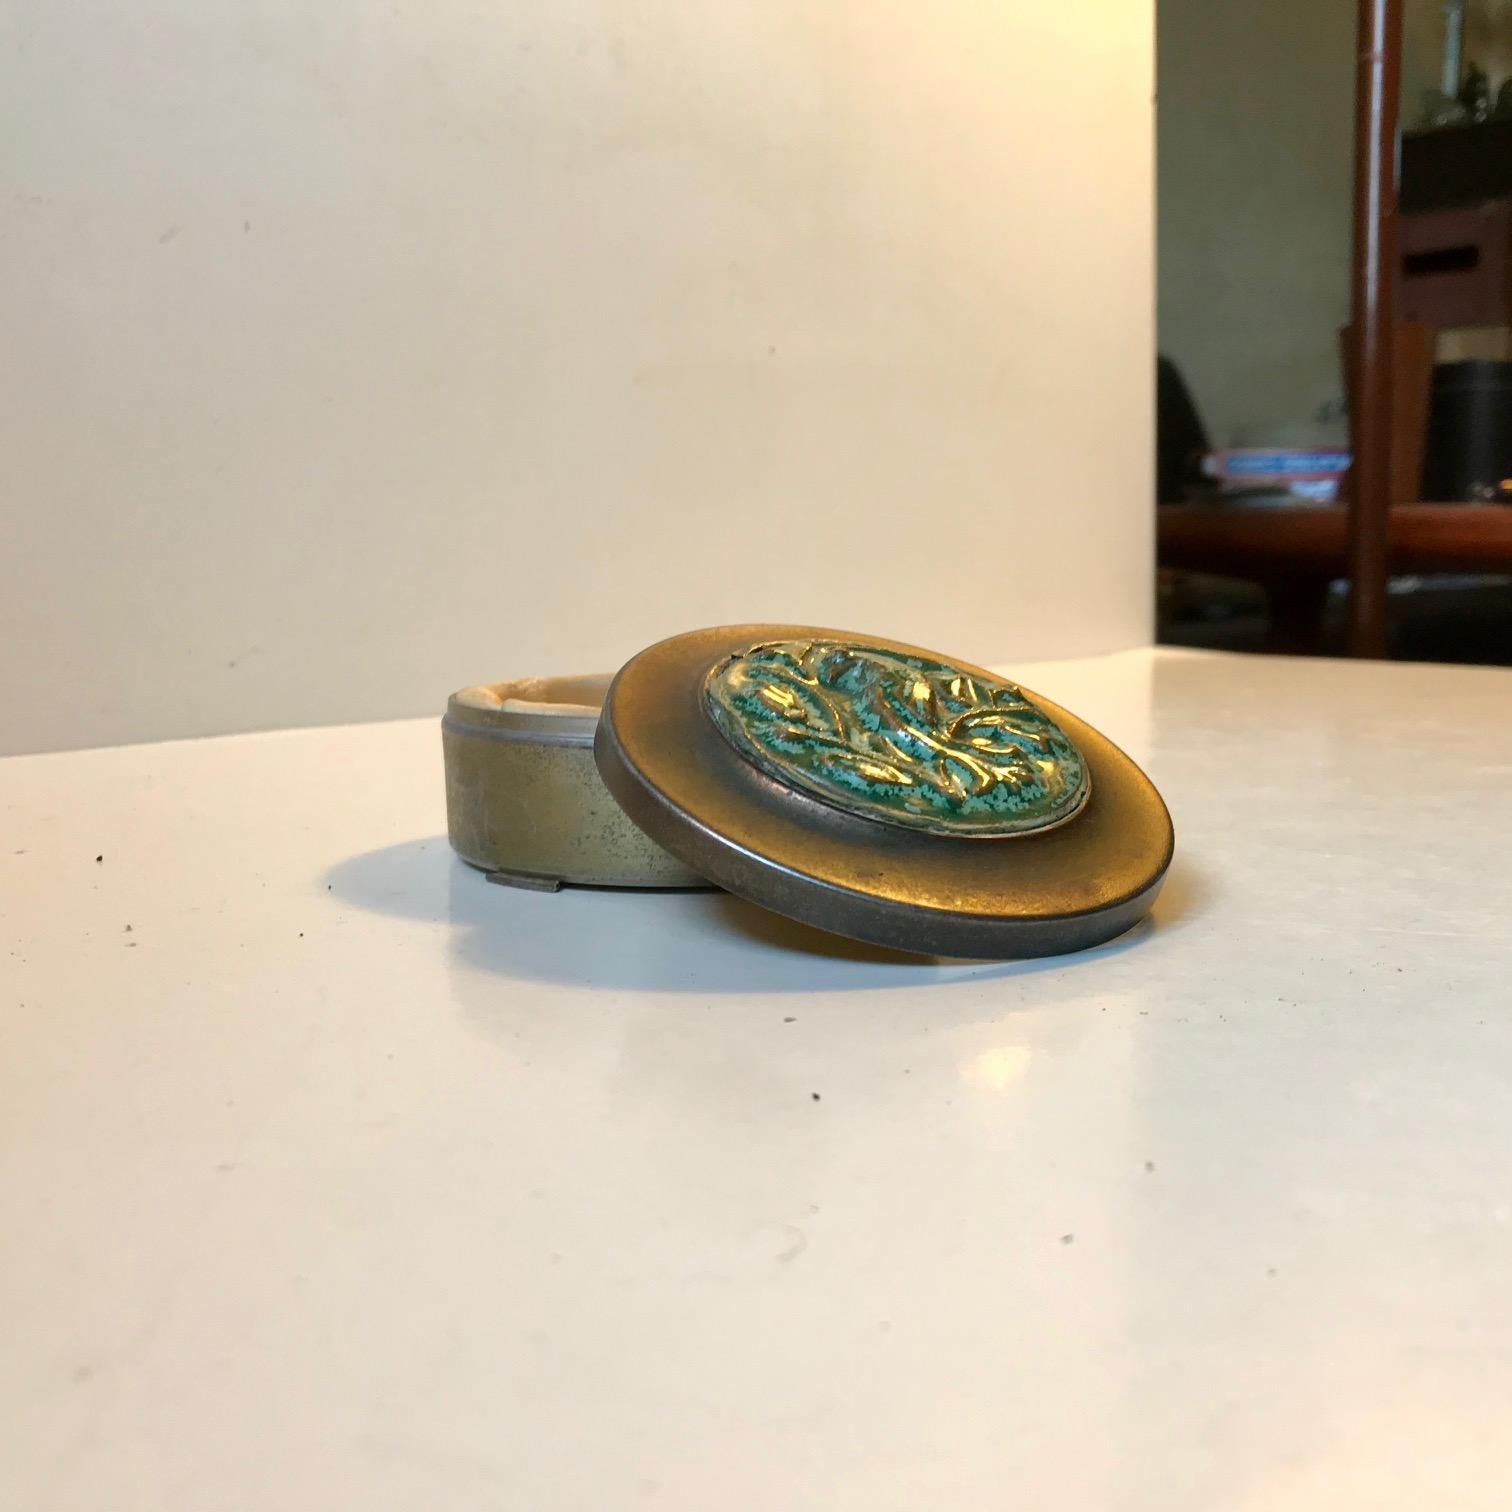 Kleines, ungewöhnliches Schmuckstück mit Bronzedeckel, besetzt mit einer keramischen Relieftafel mit einem grünen Papagei/Sittich in kristalliner Glasur. Der untere Teil des Gefäßes ist wahrscheinlich aus Zinn gefertigt. Dieses Stück ist mit BL